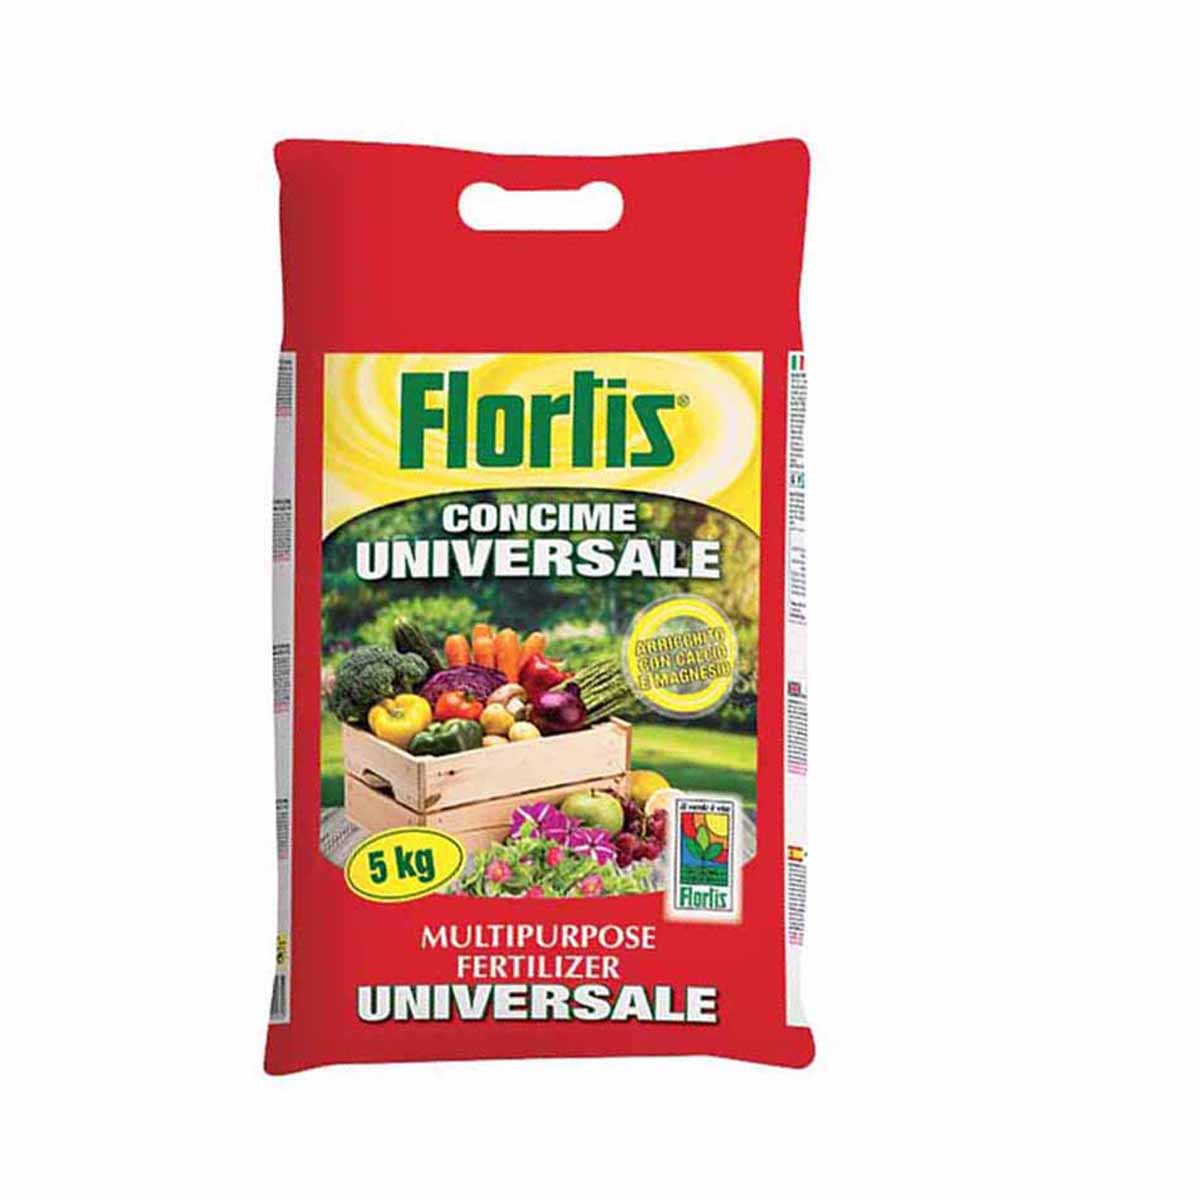 Flortis Comcime Universale Granulare 5kg